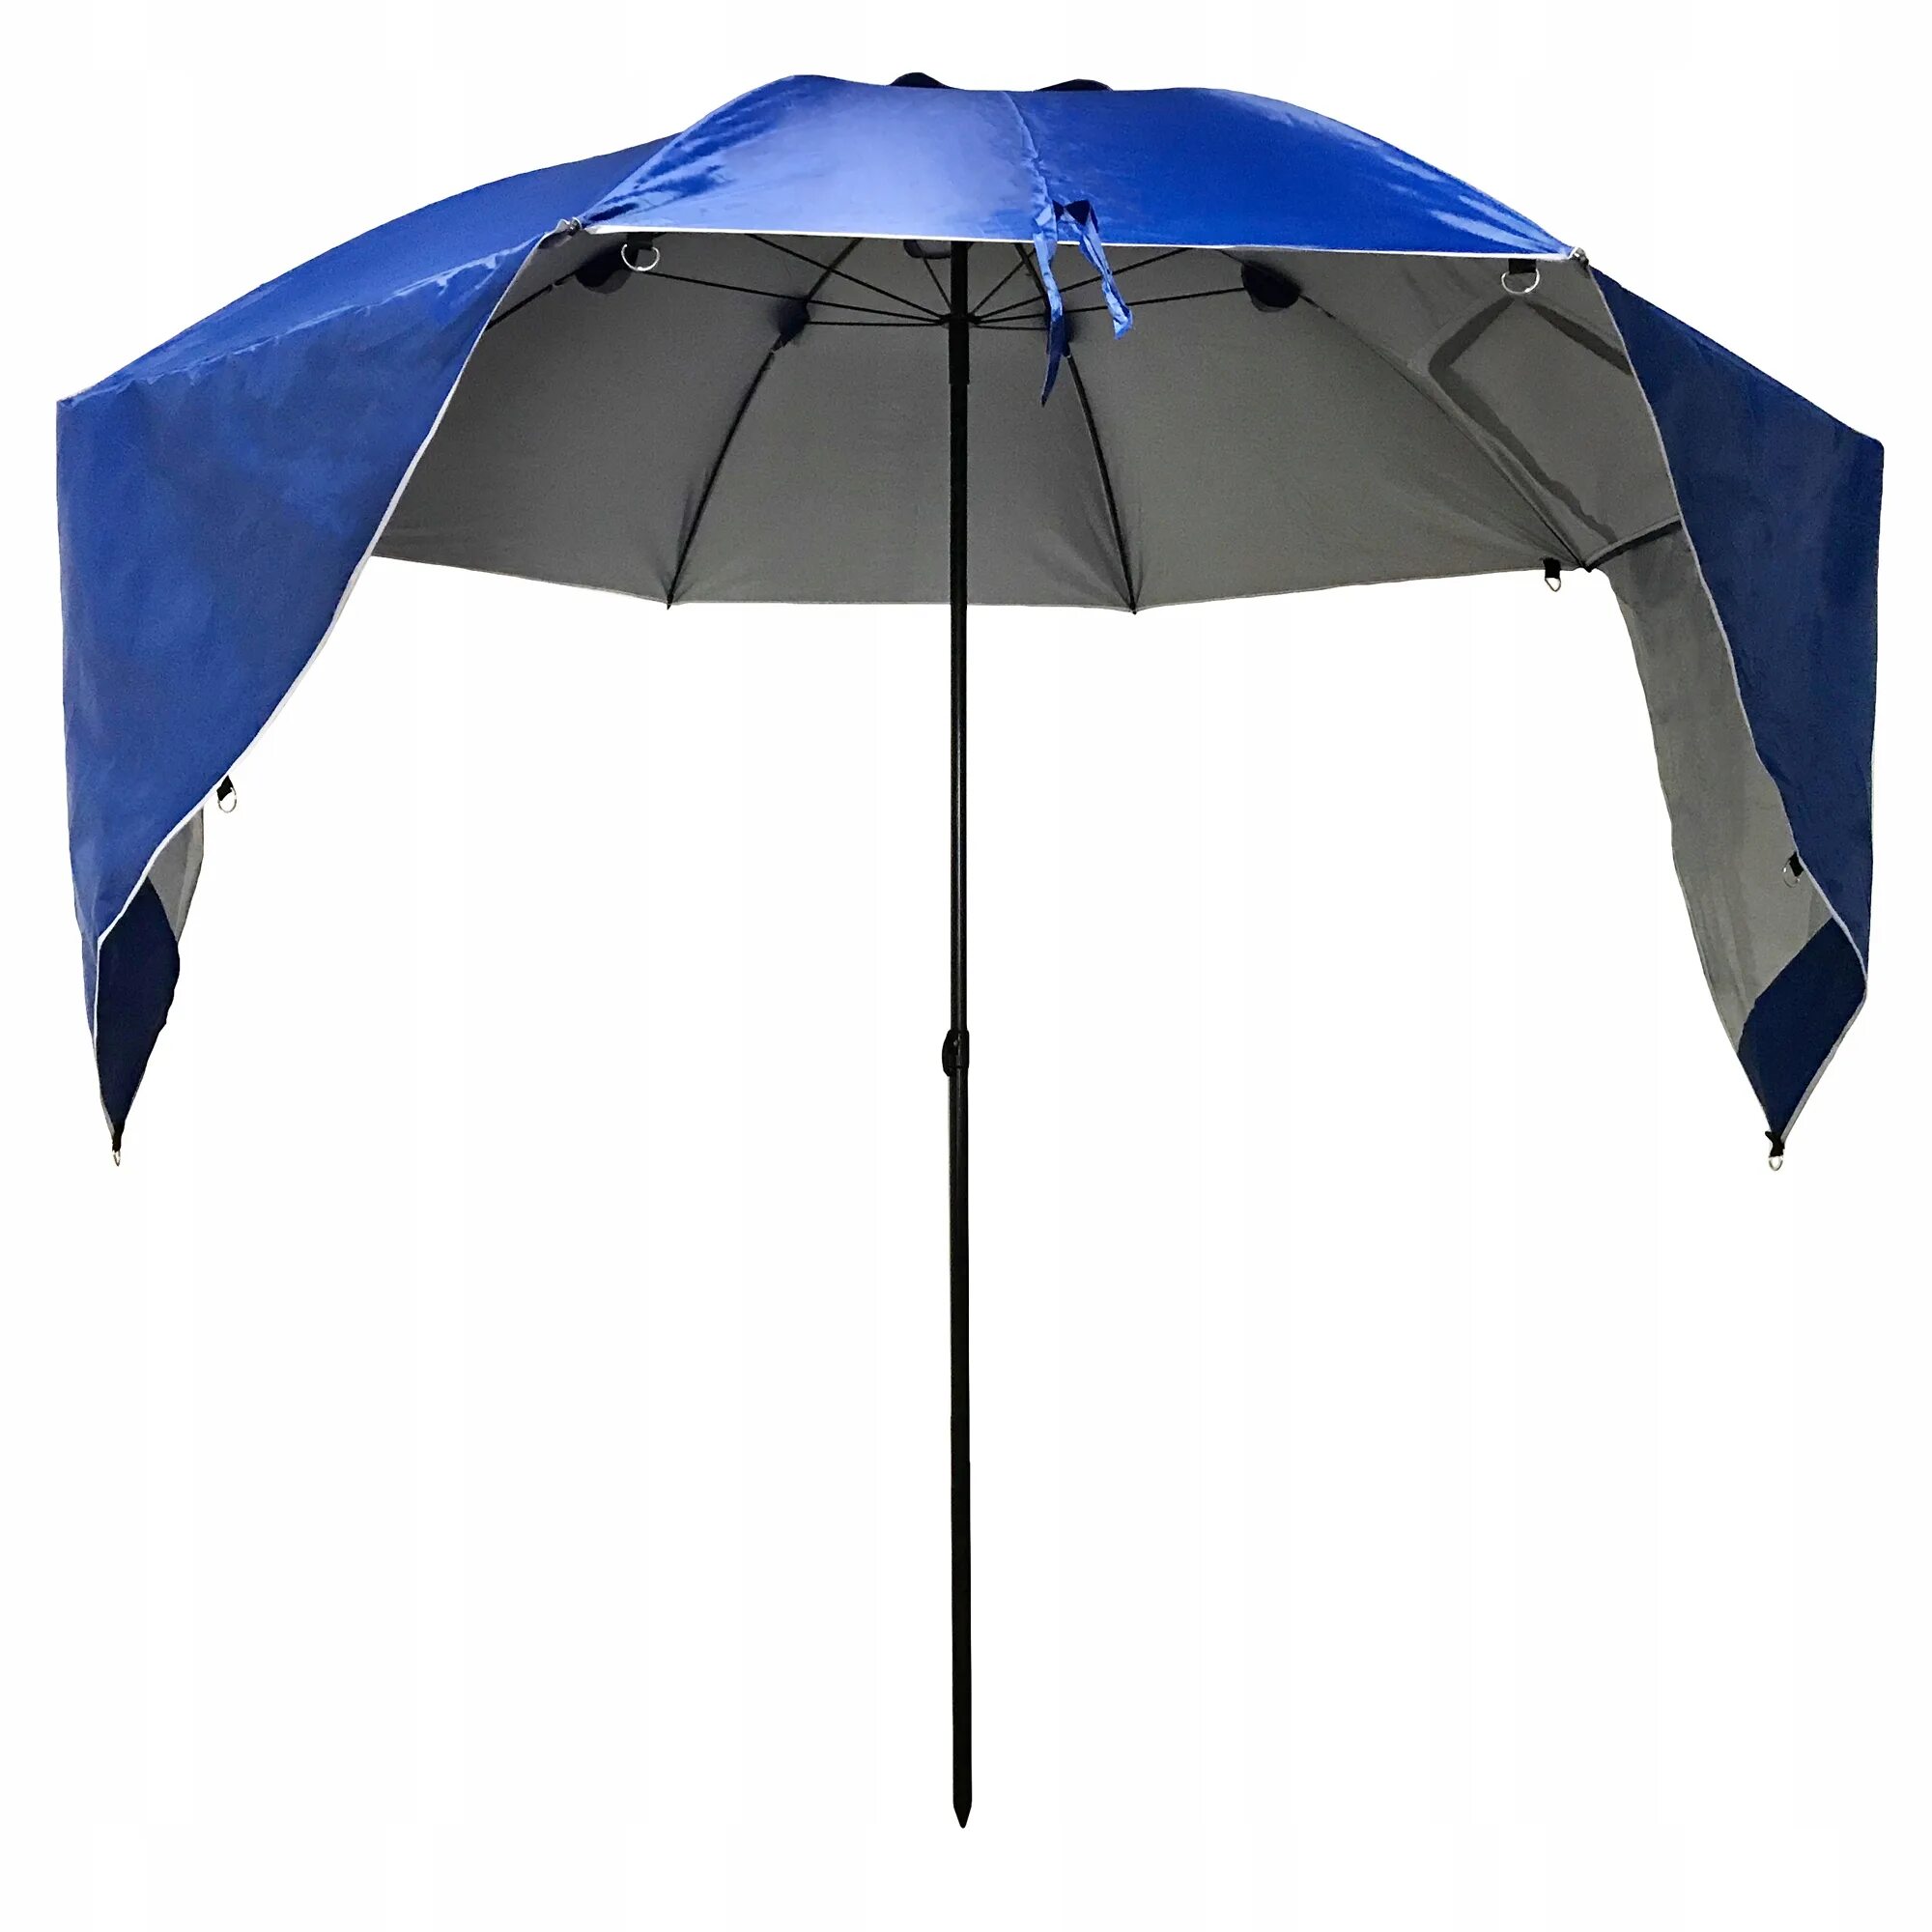 Купить пляжный зонт от солнца. Пляжный зонт Декатлон. Зонт пляжный большой складной. Пляжный зонт палатка. Зонт большой складной.